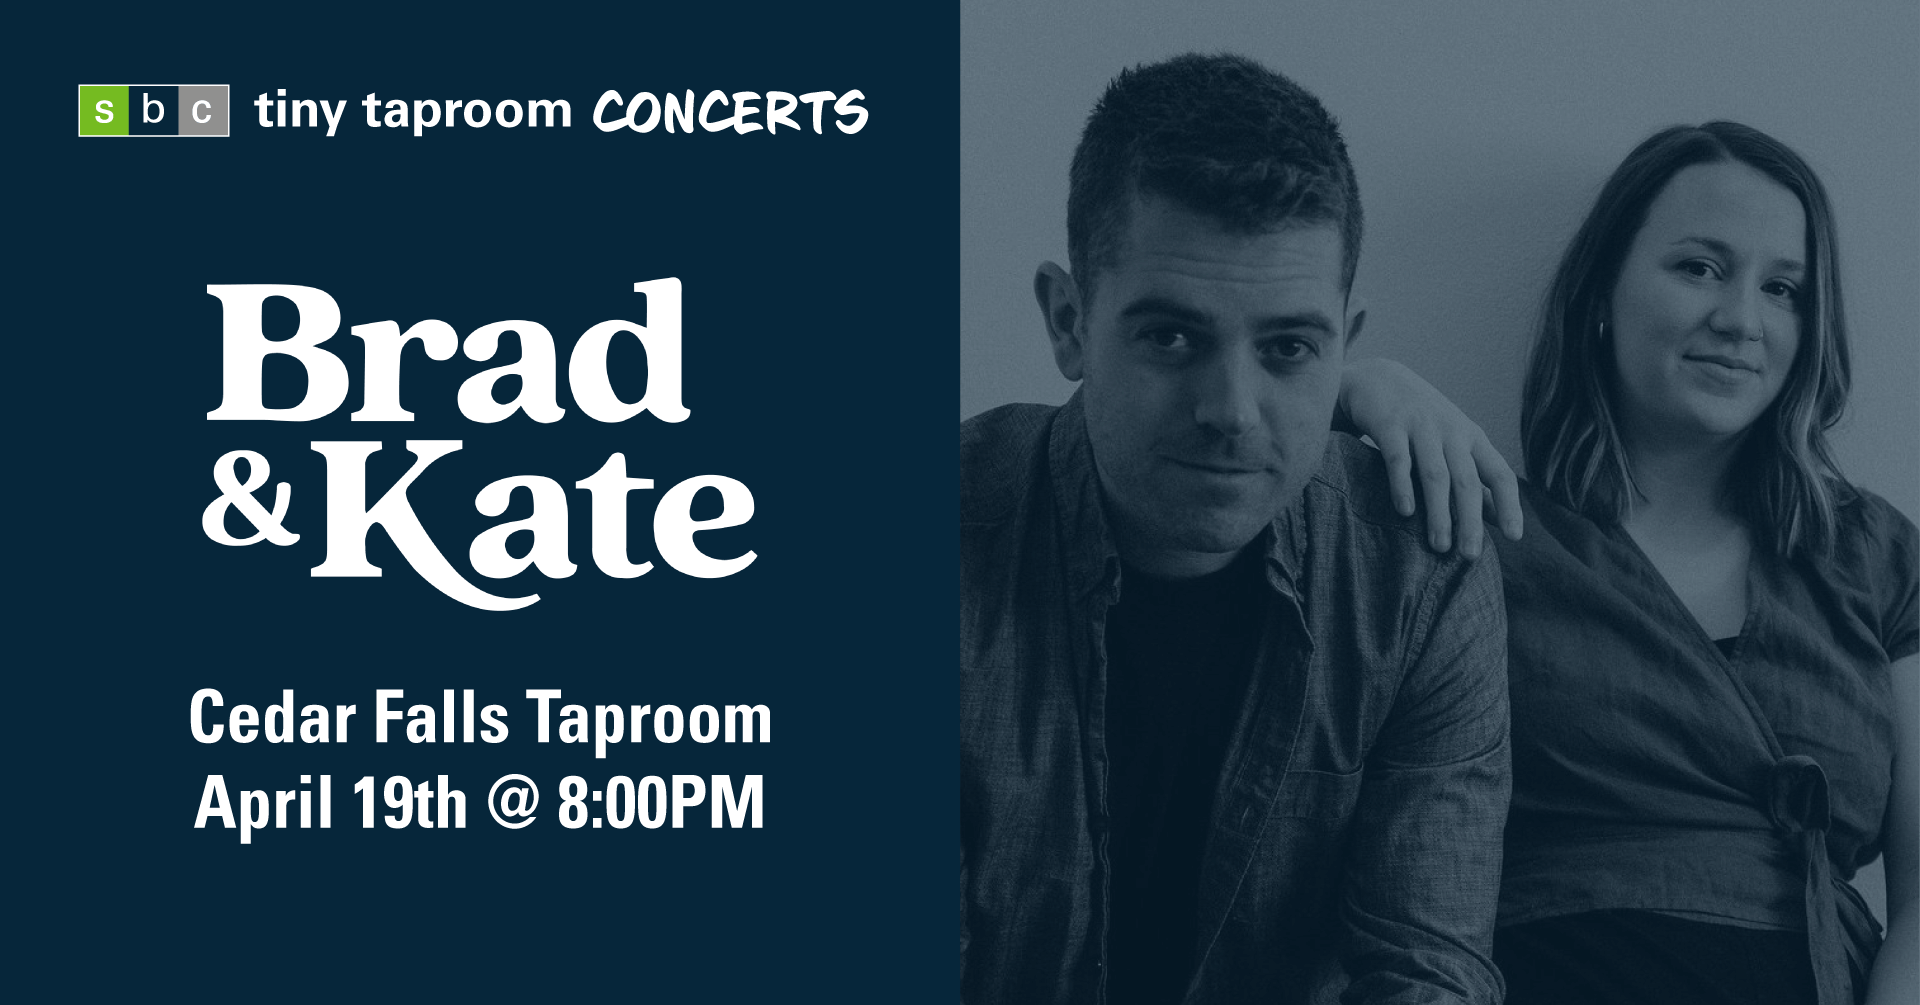 tiny taproom concert - Brad & Kate